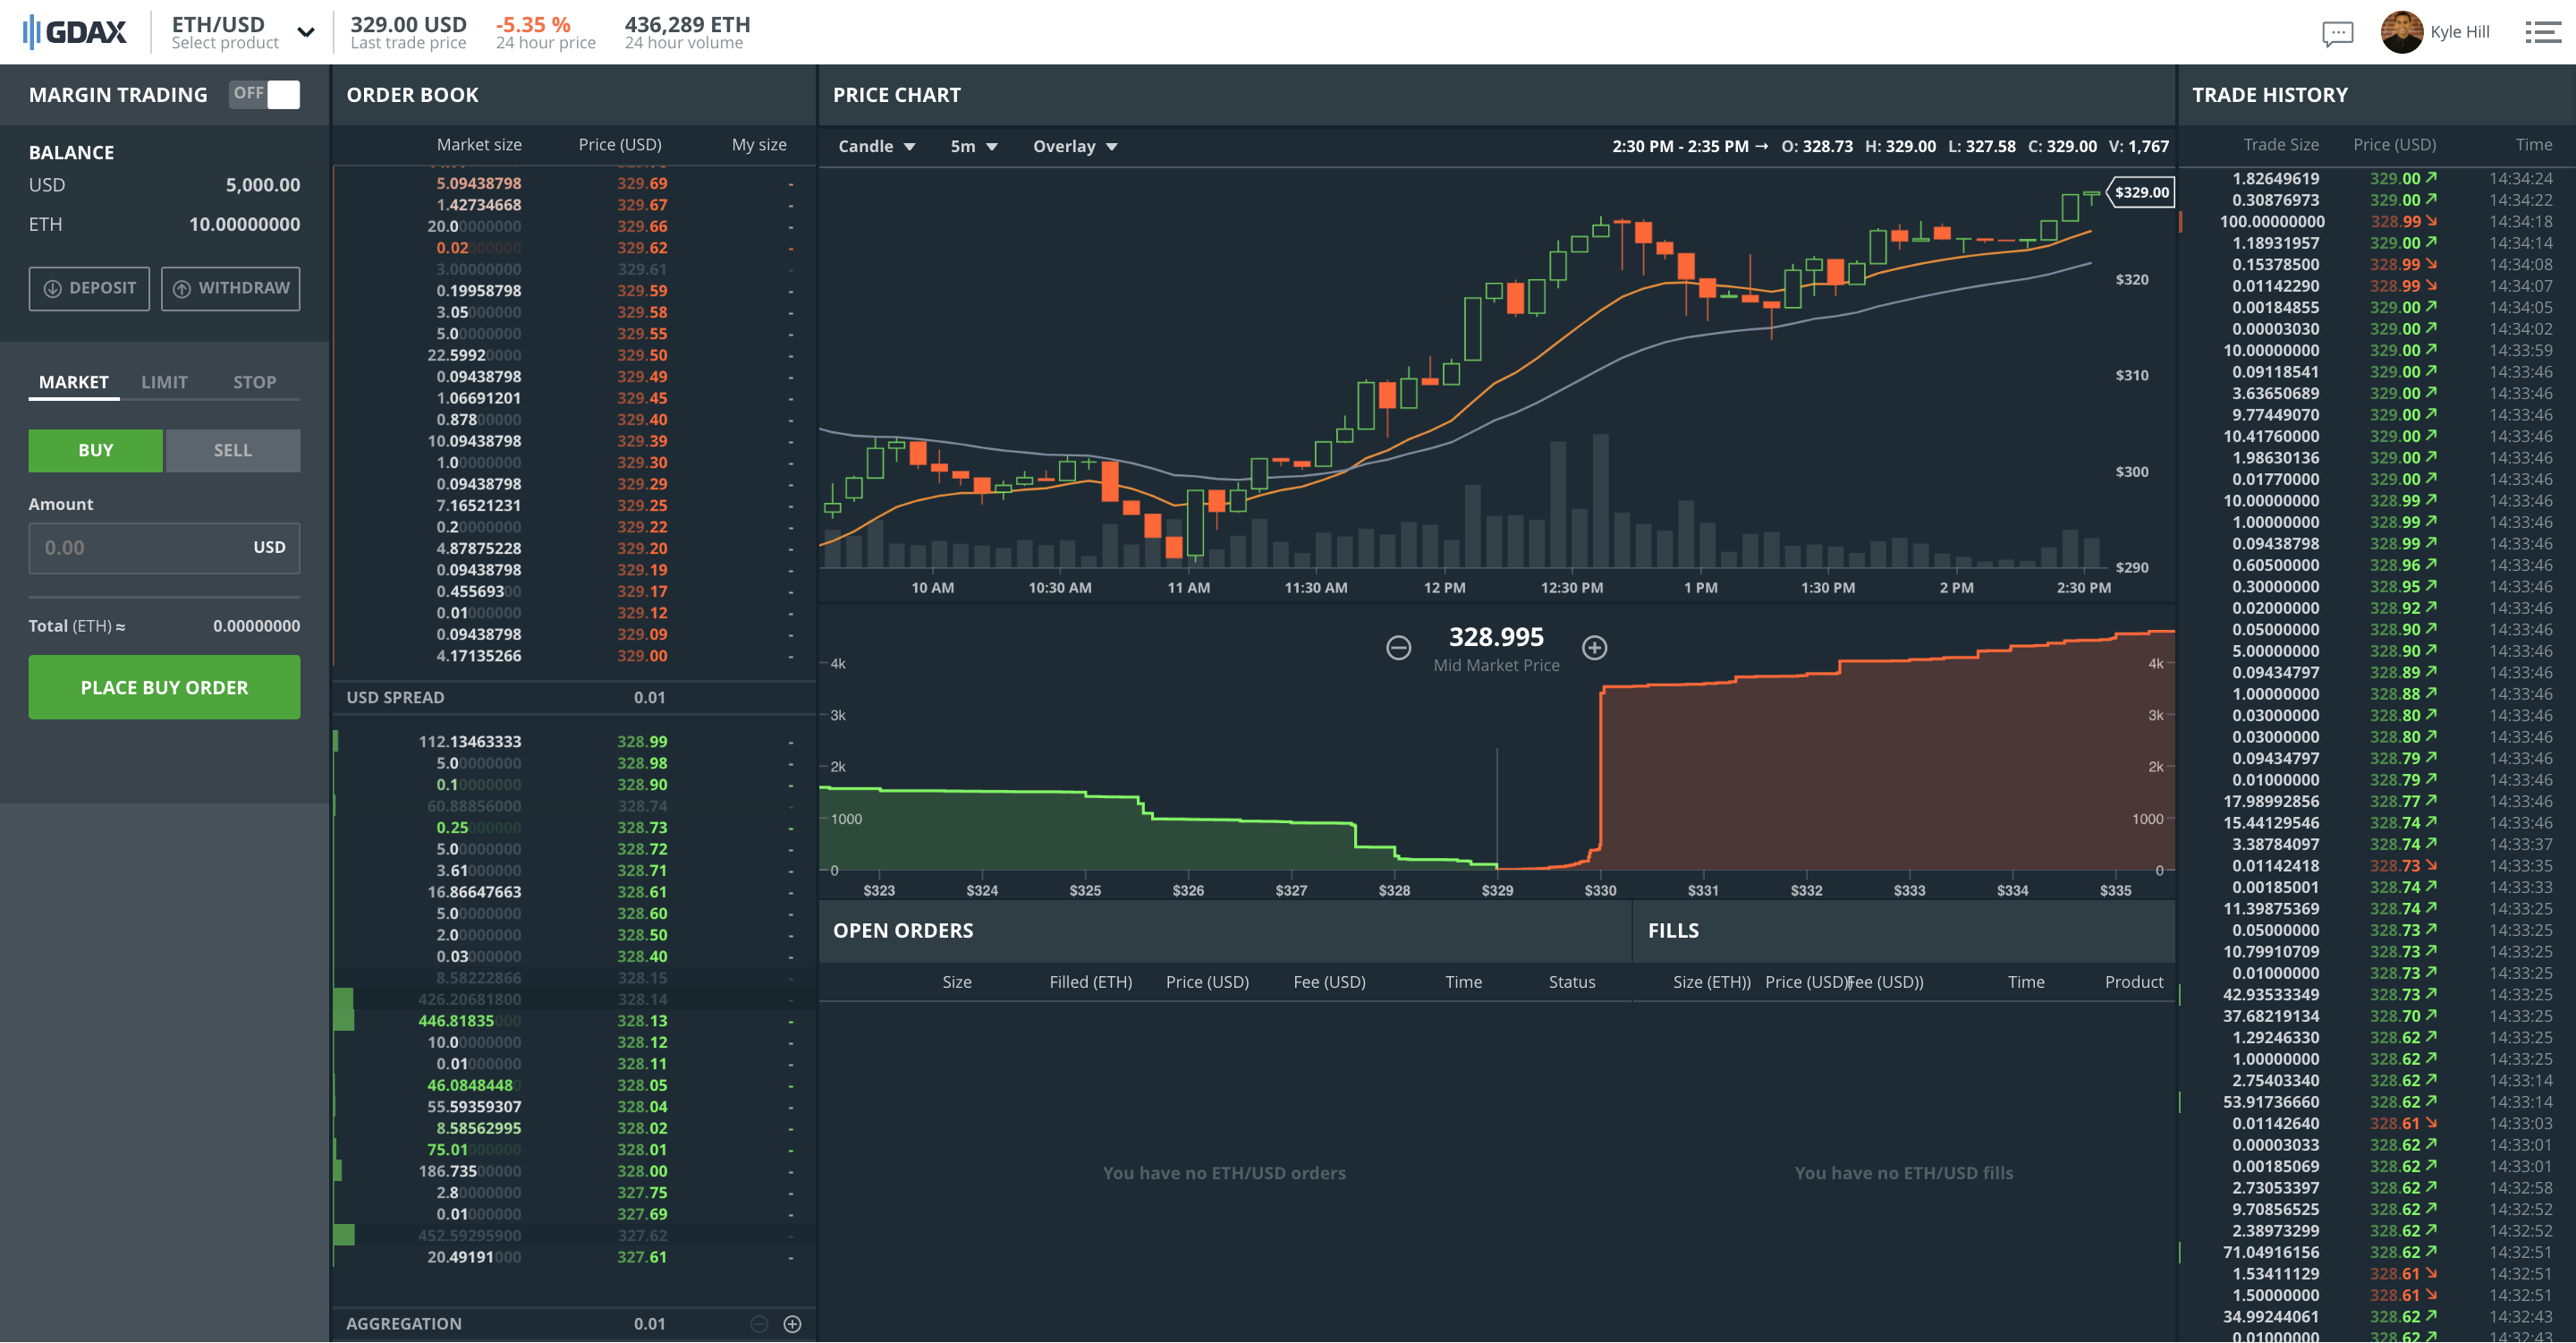 Crypto day trading platform график биткоина за последнюю неделю